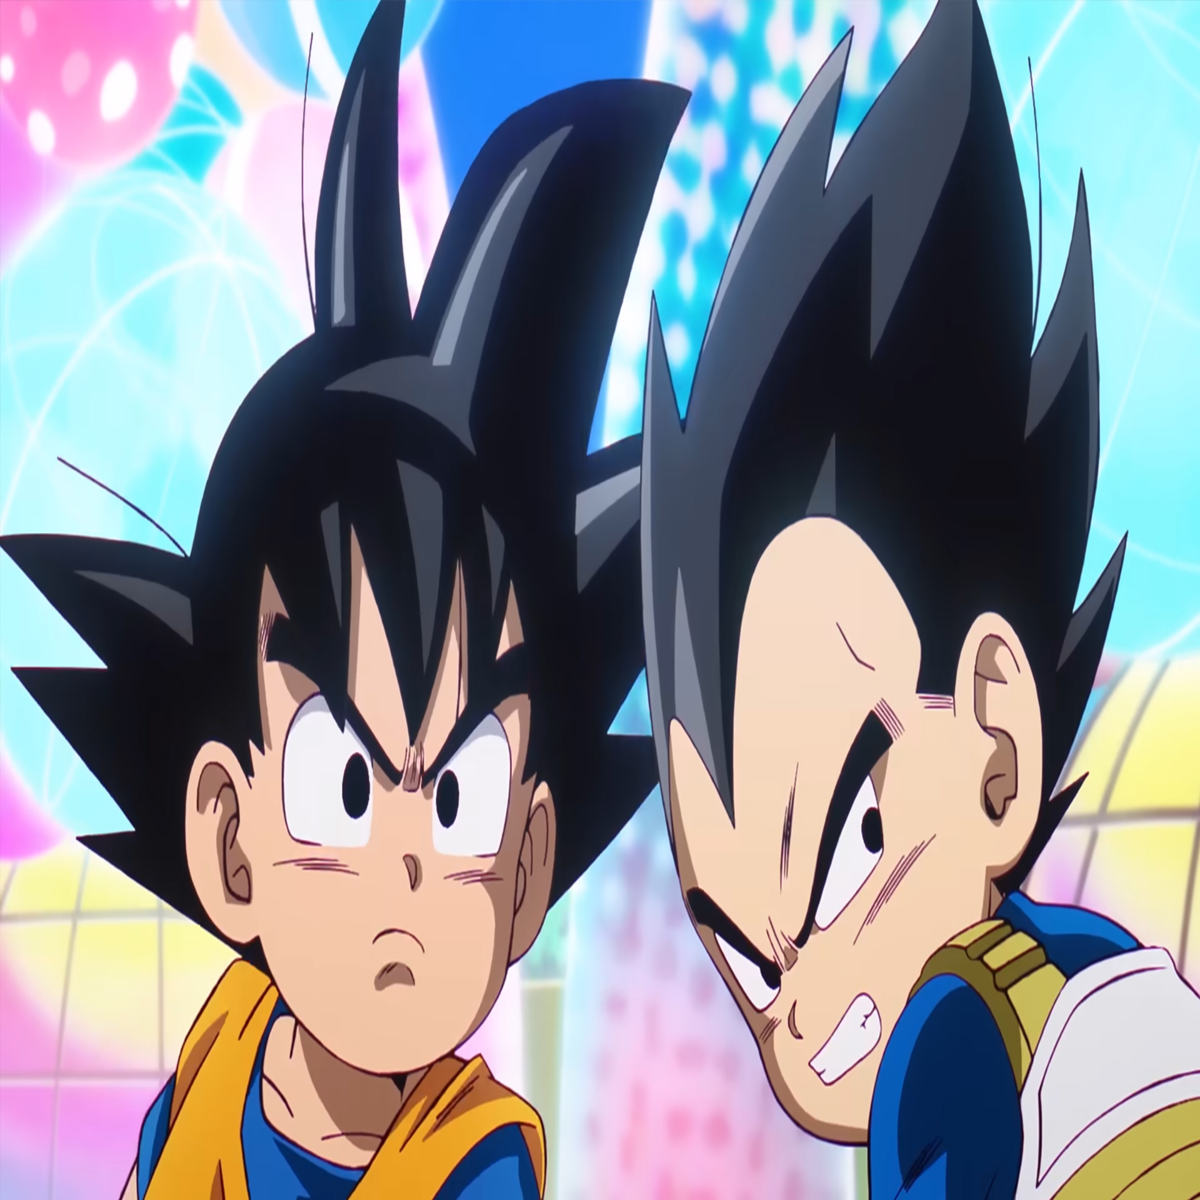 Goku criança em cada estilo 😉 - Daiko O Saiyajin